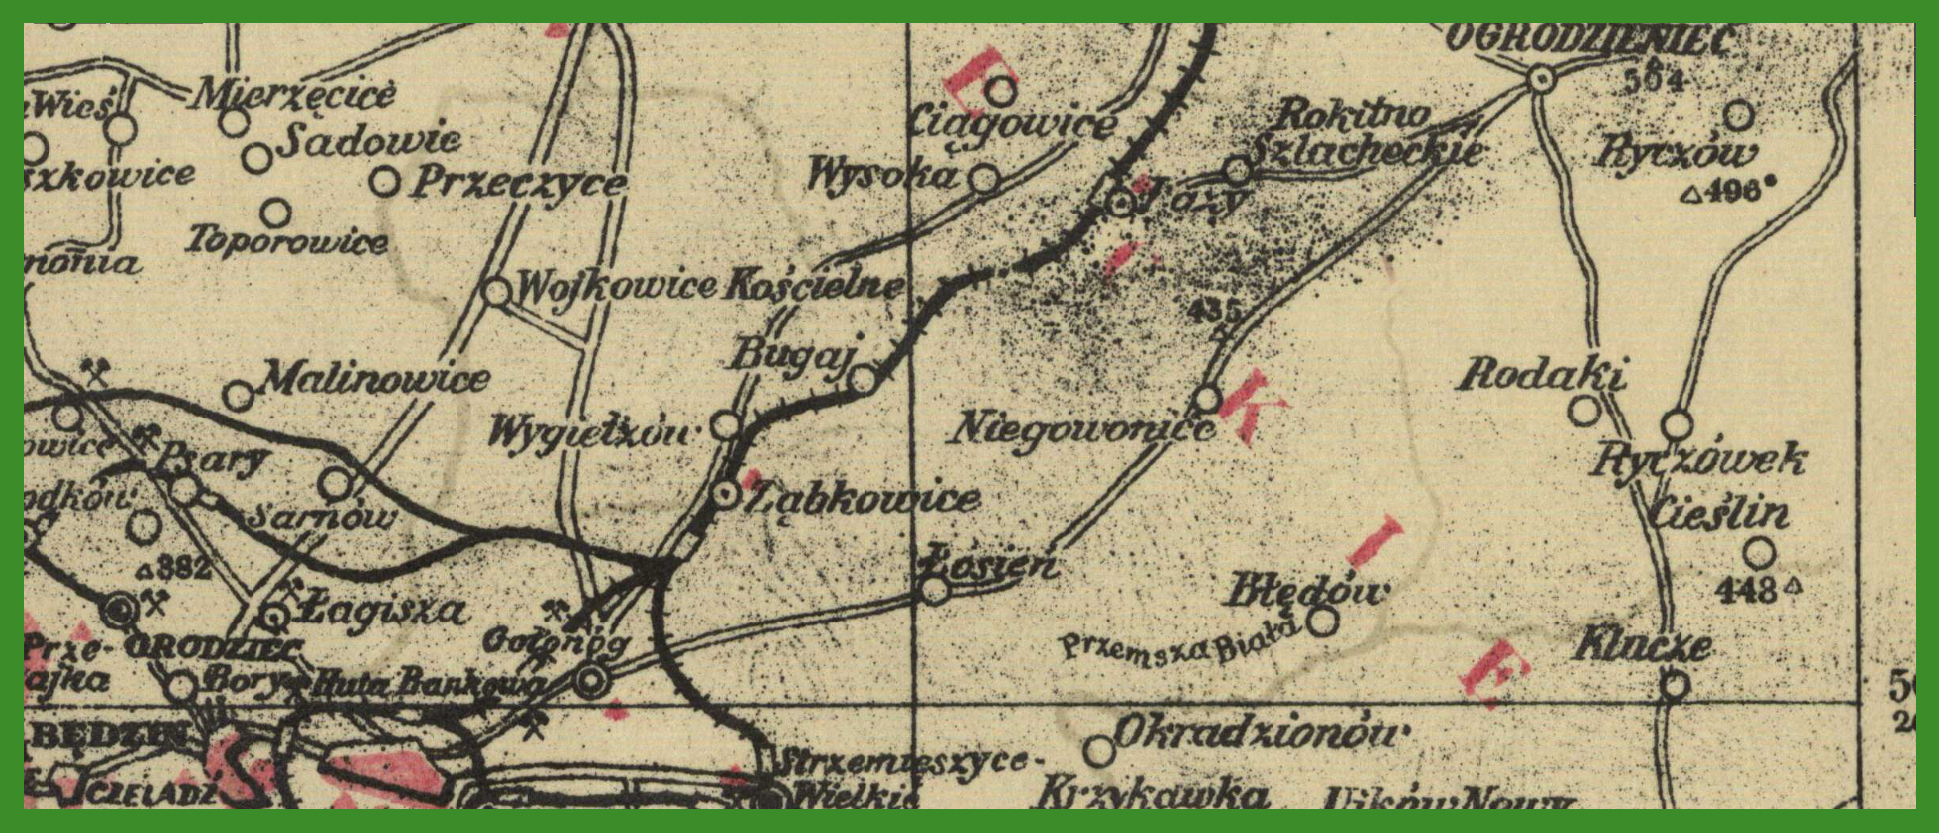 „Popularna mapa województwa śląskiego" (1938).